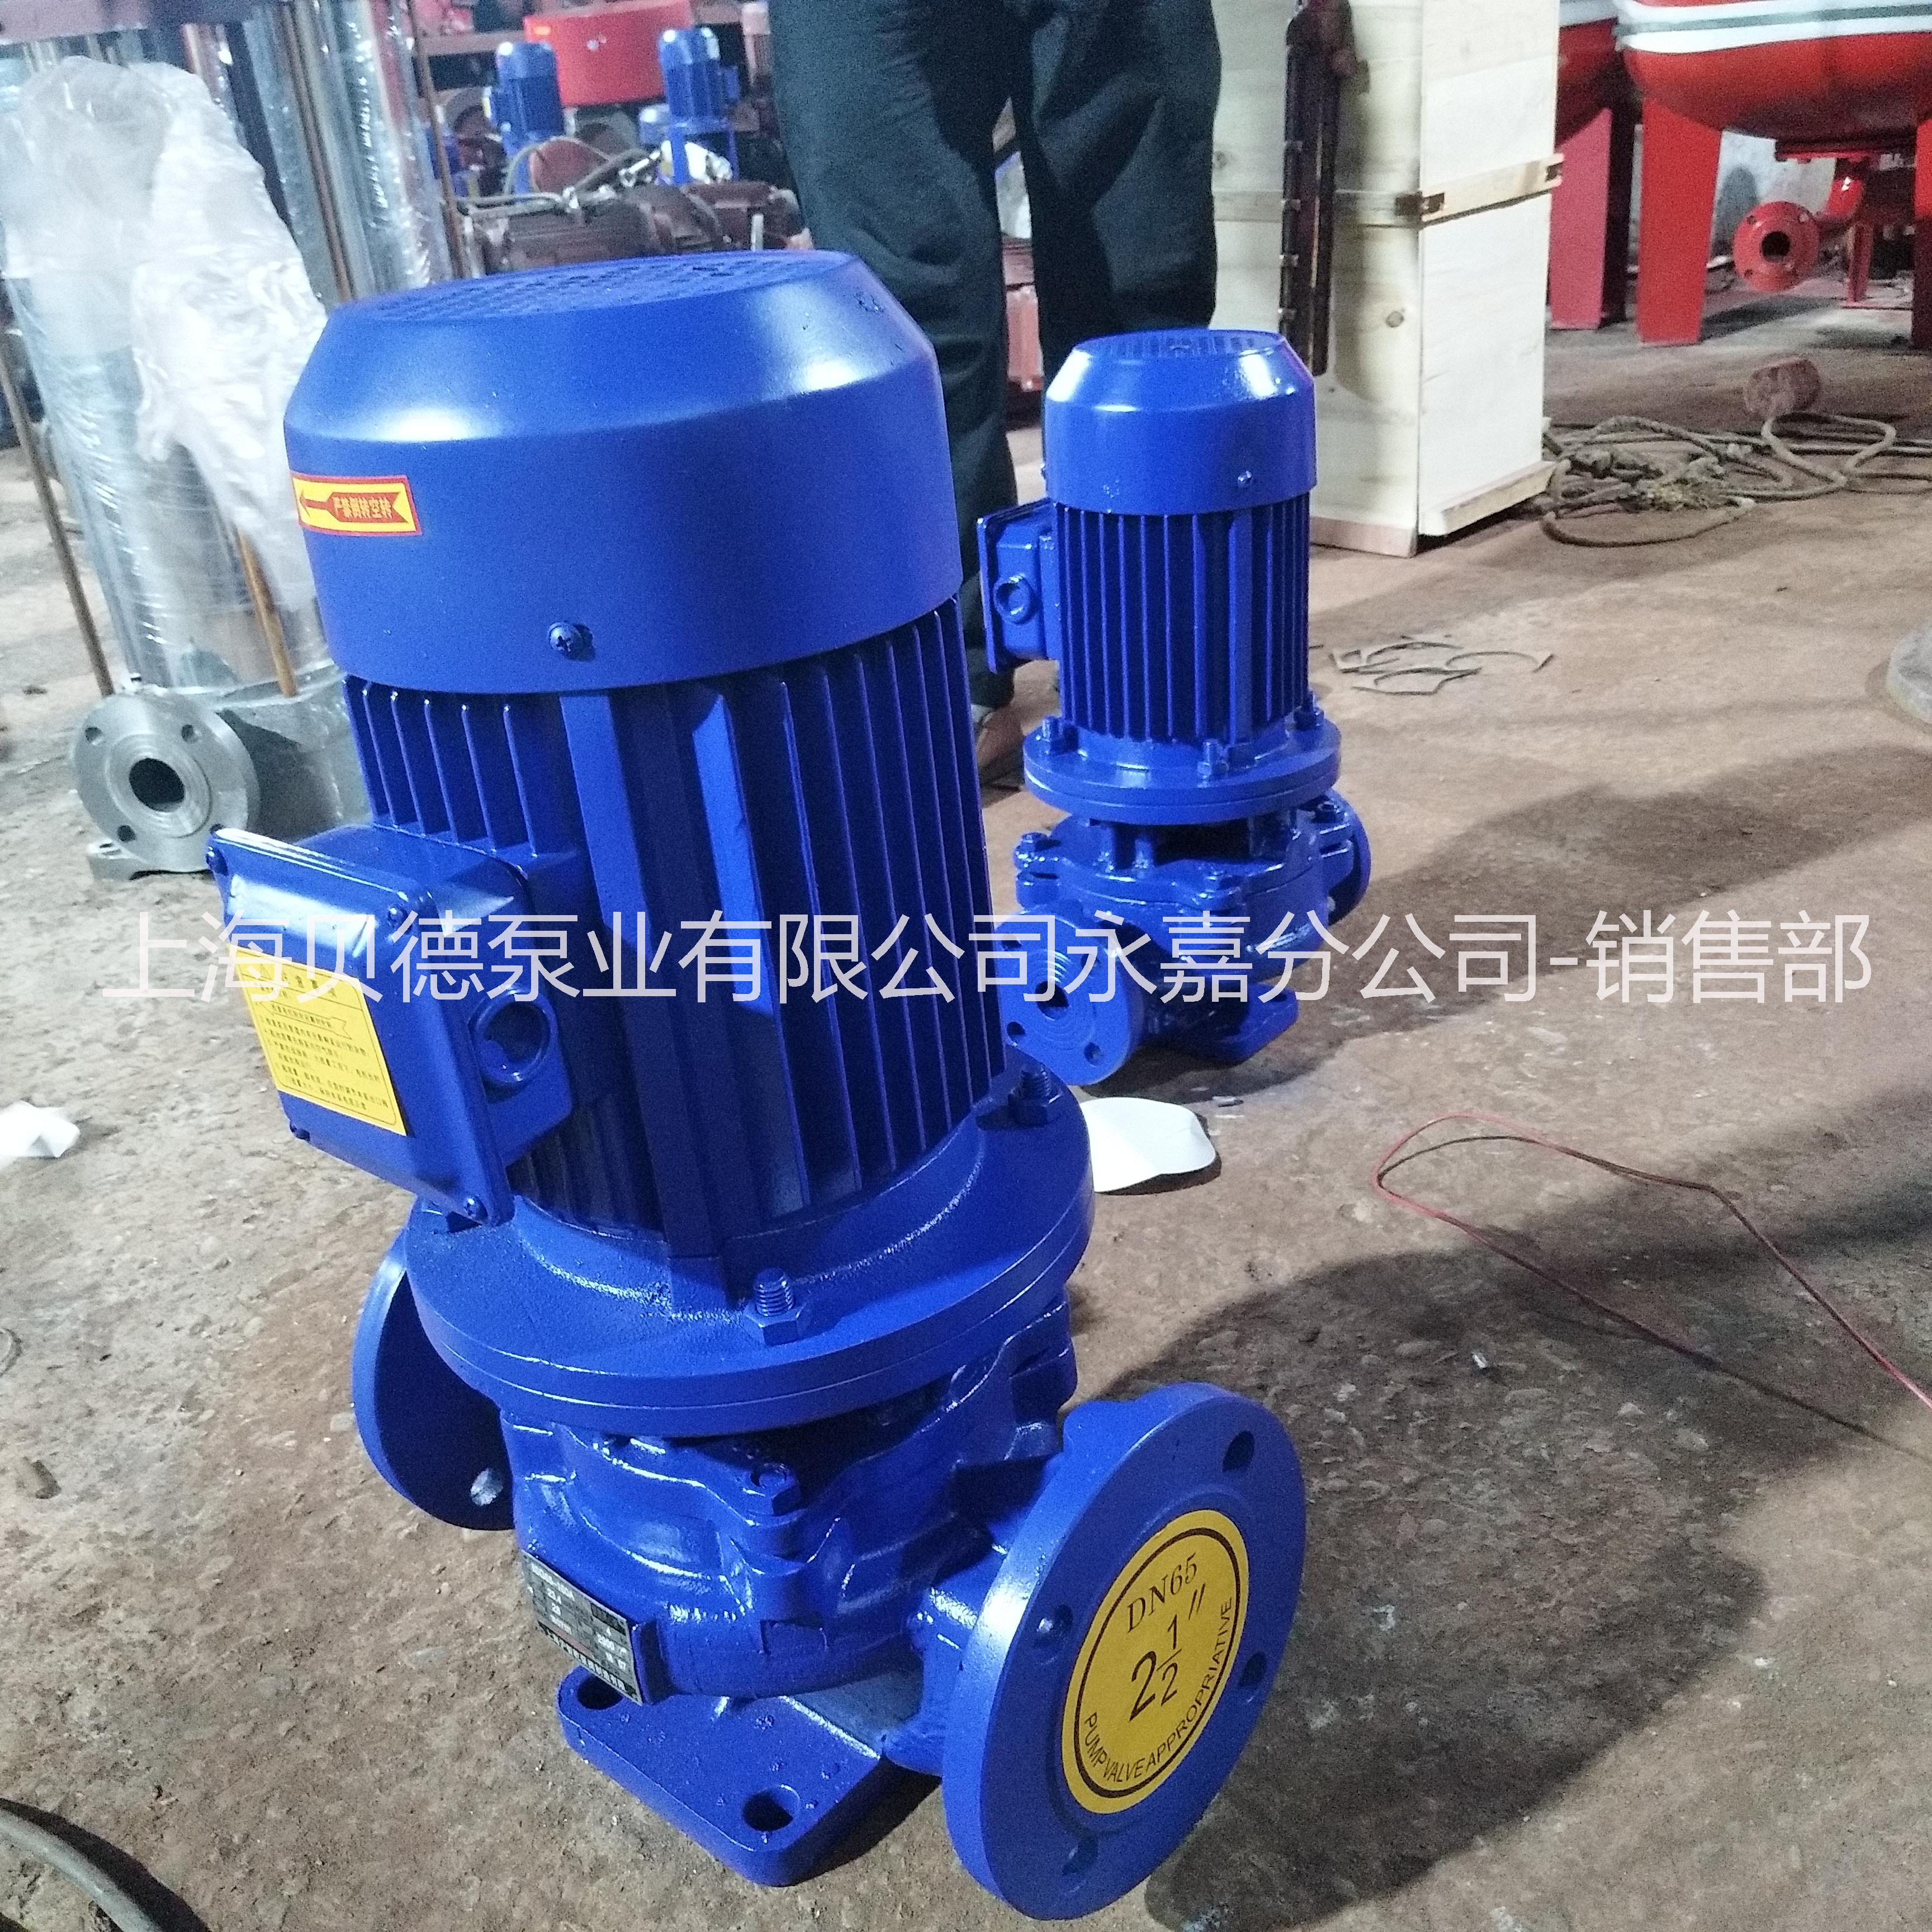 上海贝德泵业有限公司济南办事处ISG150-160  管道循环泵 自动单级单吸管道泵  IRG热水型管道循环泵